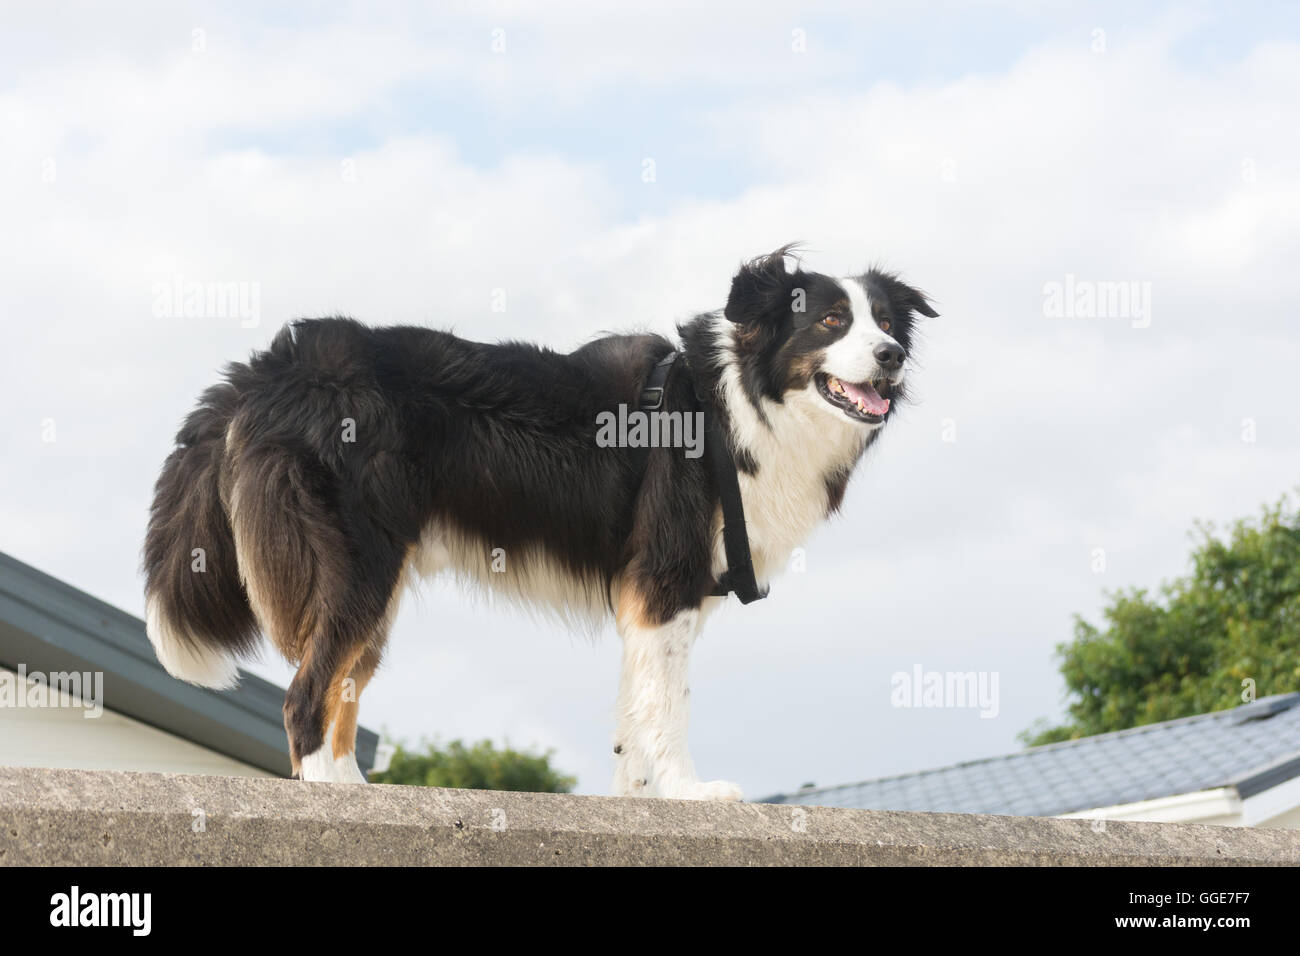 Der Border Collie ist eine beliebte Rasse des Hundes im Vereinigten Königreich. Bekannt für seine Energie und Intelligenz, viele Arbeiten in landwirtschaftlichen Betrieben. Stockfoto